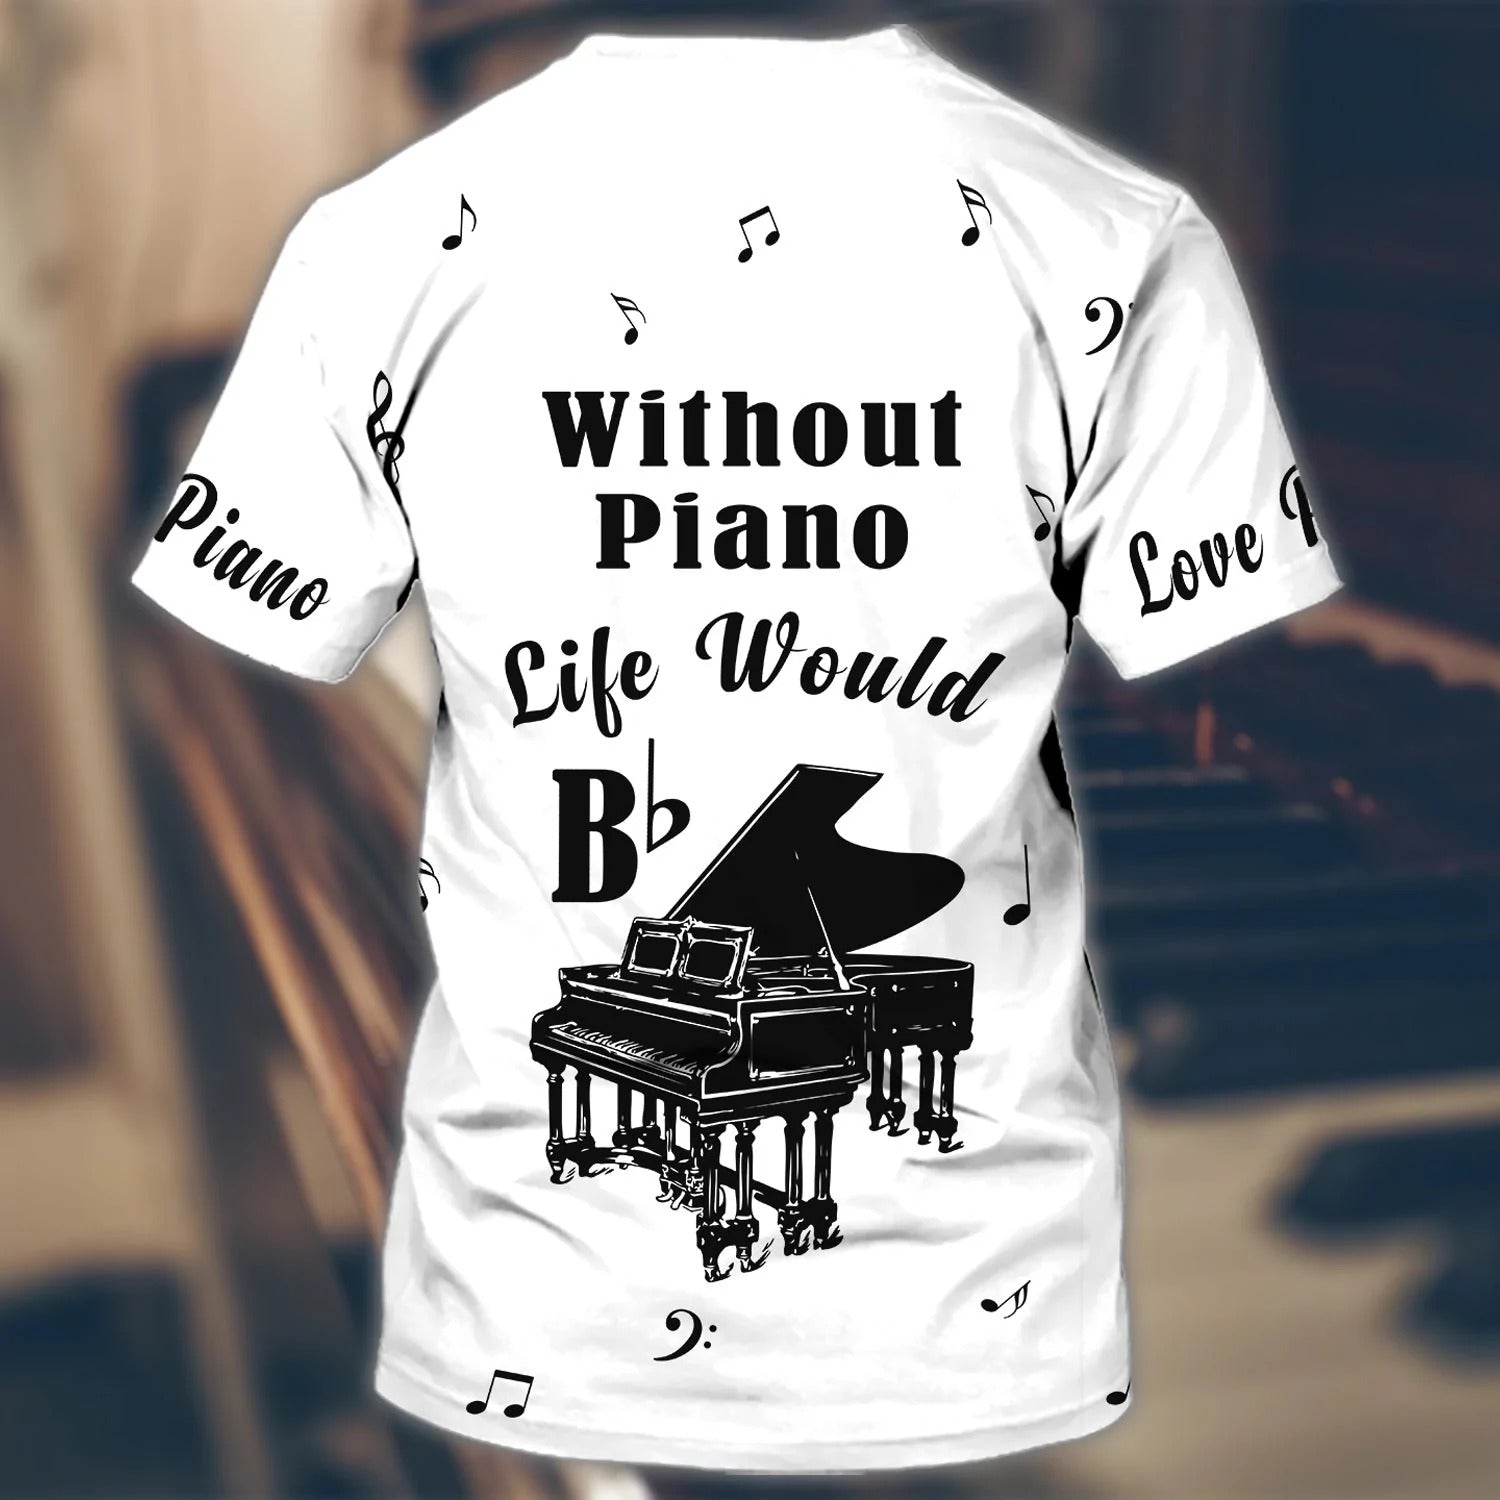 Custom 3D Piano Shirt/ Unisex Pianist T Shirt/ Piano Teacher Gift/ Piano Class Uniform